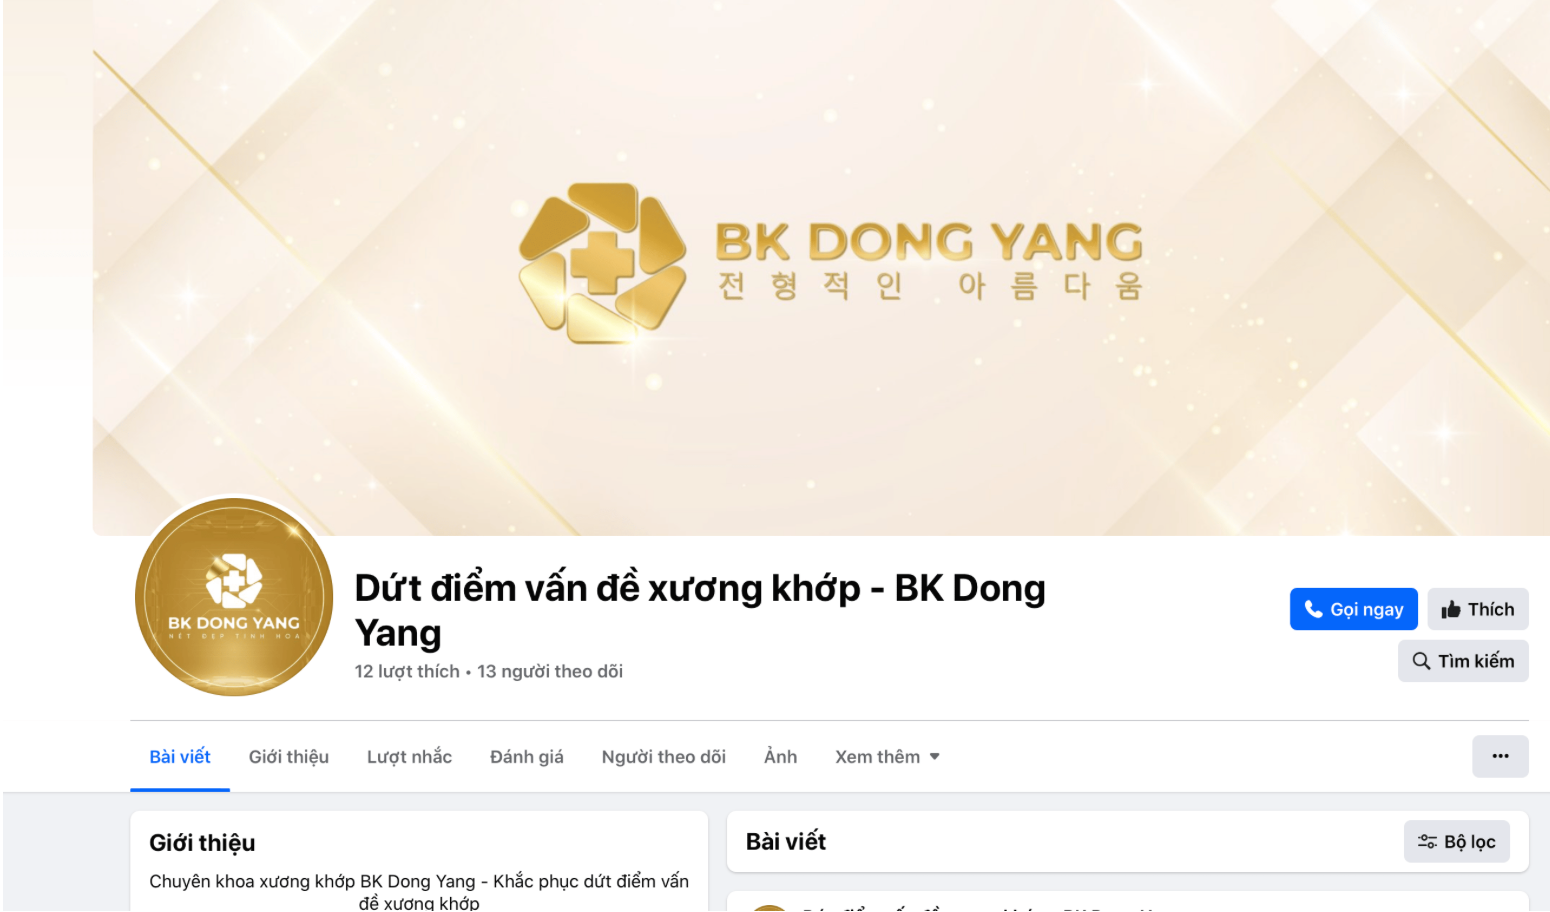  BK DONG YANG bị xử phạt vì quảng cáo “chui”